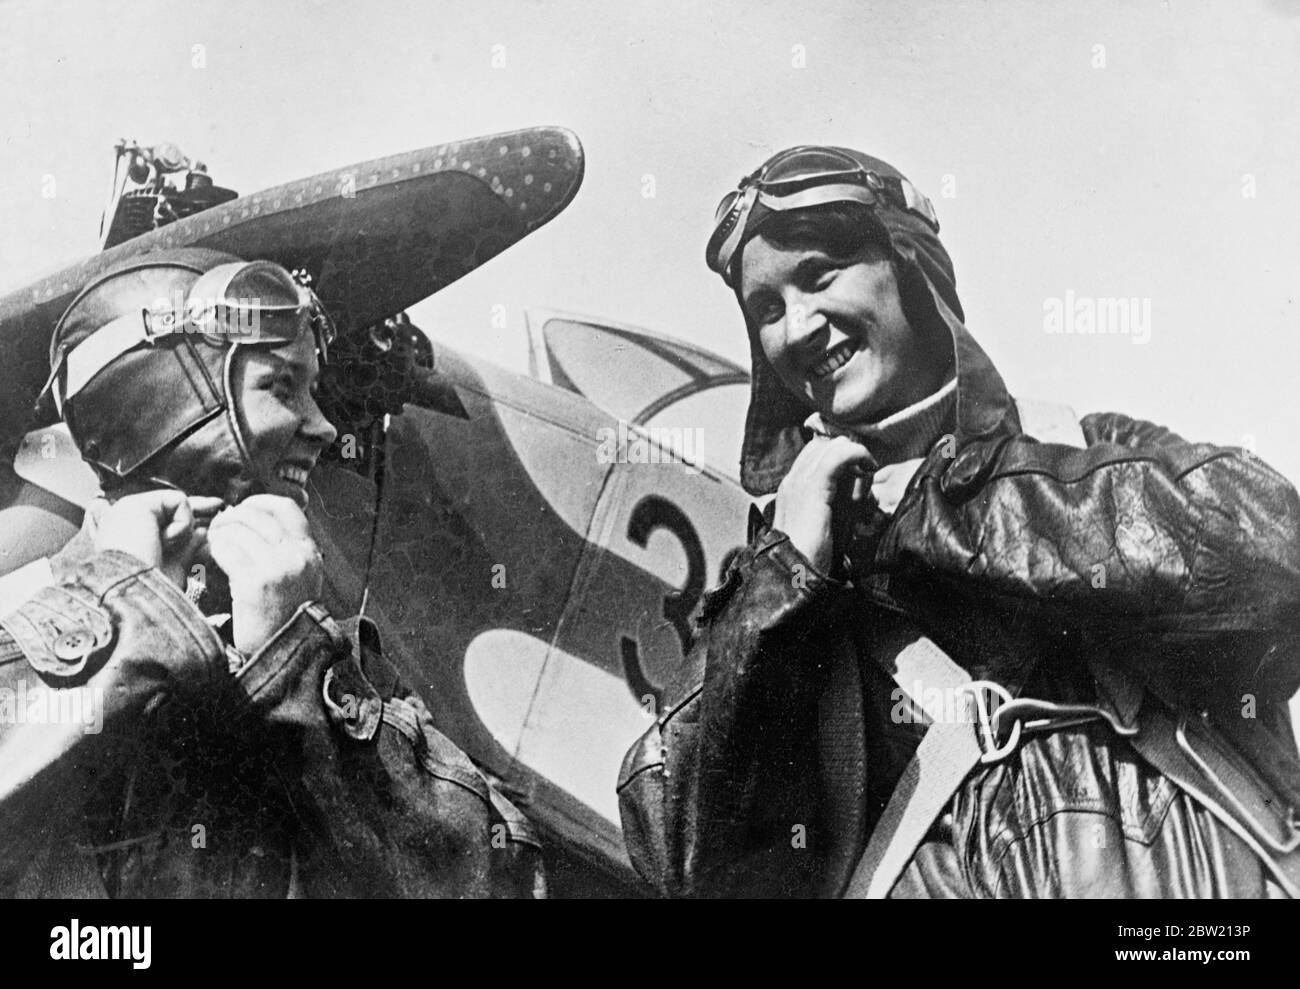 Die sowjetischen Frauenflieger Irina Vishnevskaya (rechts) und Katja Mednikova haben einen neuen Höhenweltrekord für Frauen aufgestellt. Sie sind vom Flugplatz des Kosarev Central Air Club in Moskau in einer russischen Maschine abgeheben und erreichten eine Höhe von 6518 m. Den bisherigen Rekord von 6115 m stellten die französischen Frauen Charneau und Clarac im Januar 1935 auf. Irina, die Fluglehrerin ist, hat mehr als 4000 Flüge gemacht. Katya ist ein Fabrikmädchen, das in ihrer Freizeit fliegen lernte. 12 Juli 1937 Stockfoto